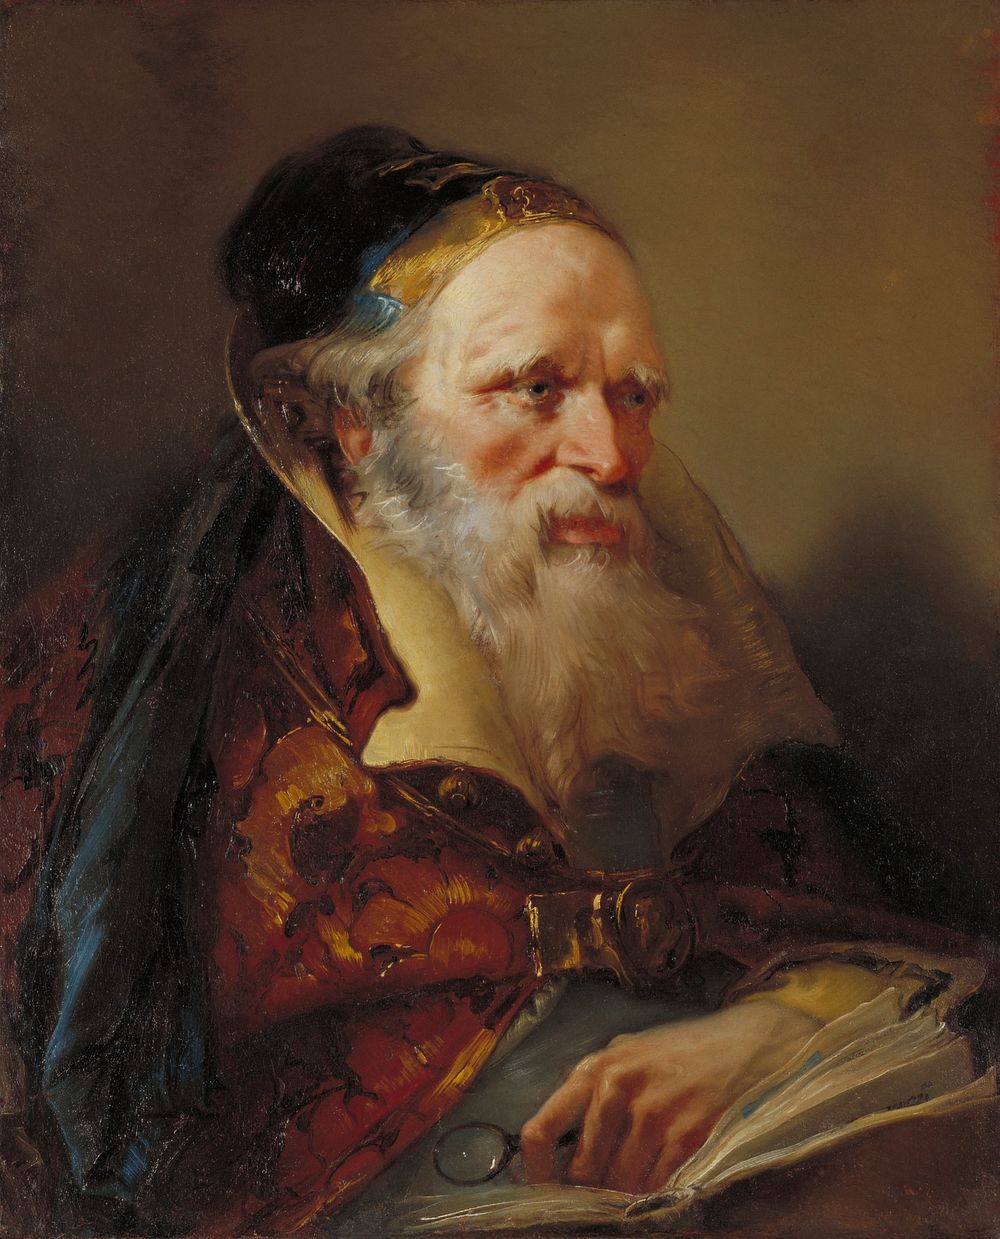 Portrait of philosopher, scholar - head. Original from the Minneapolis Institute of Art.